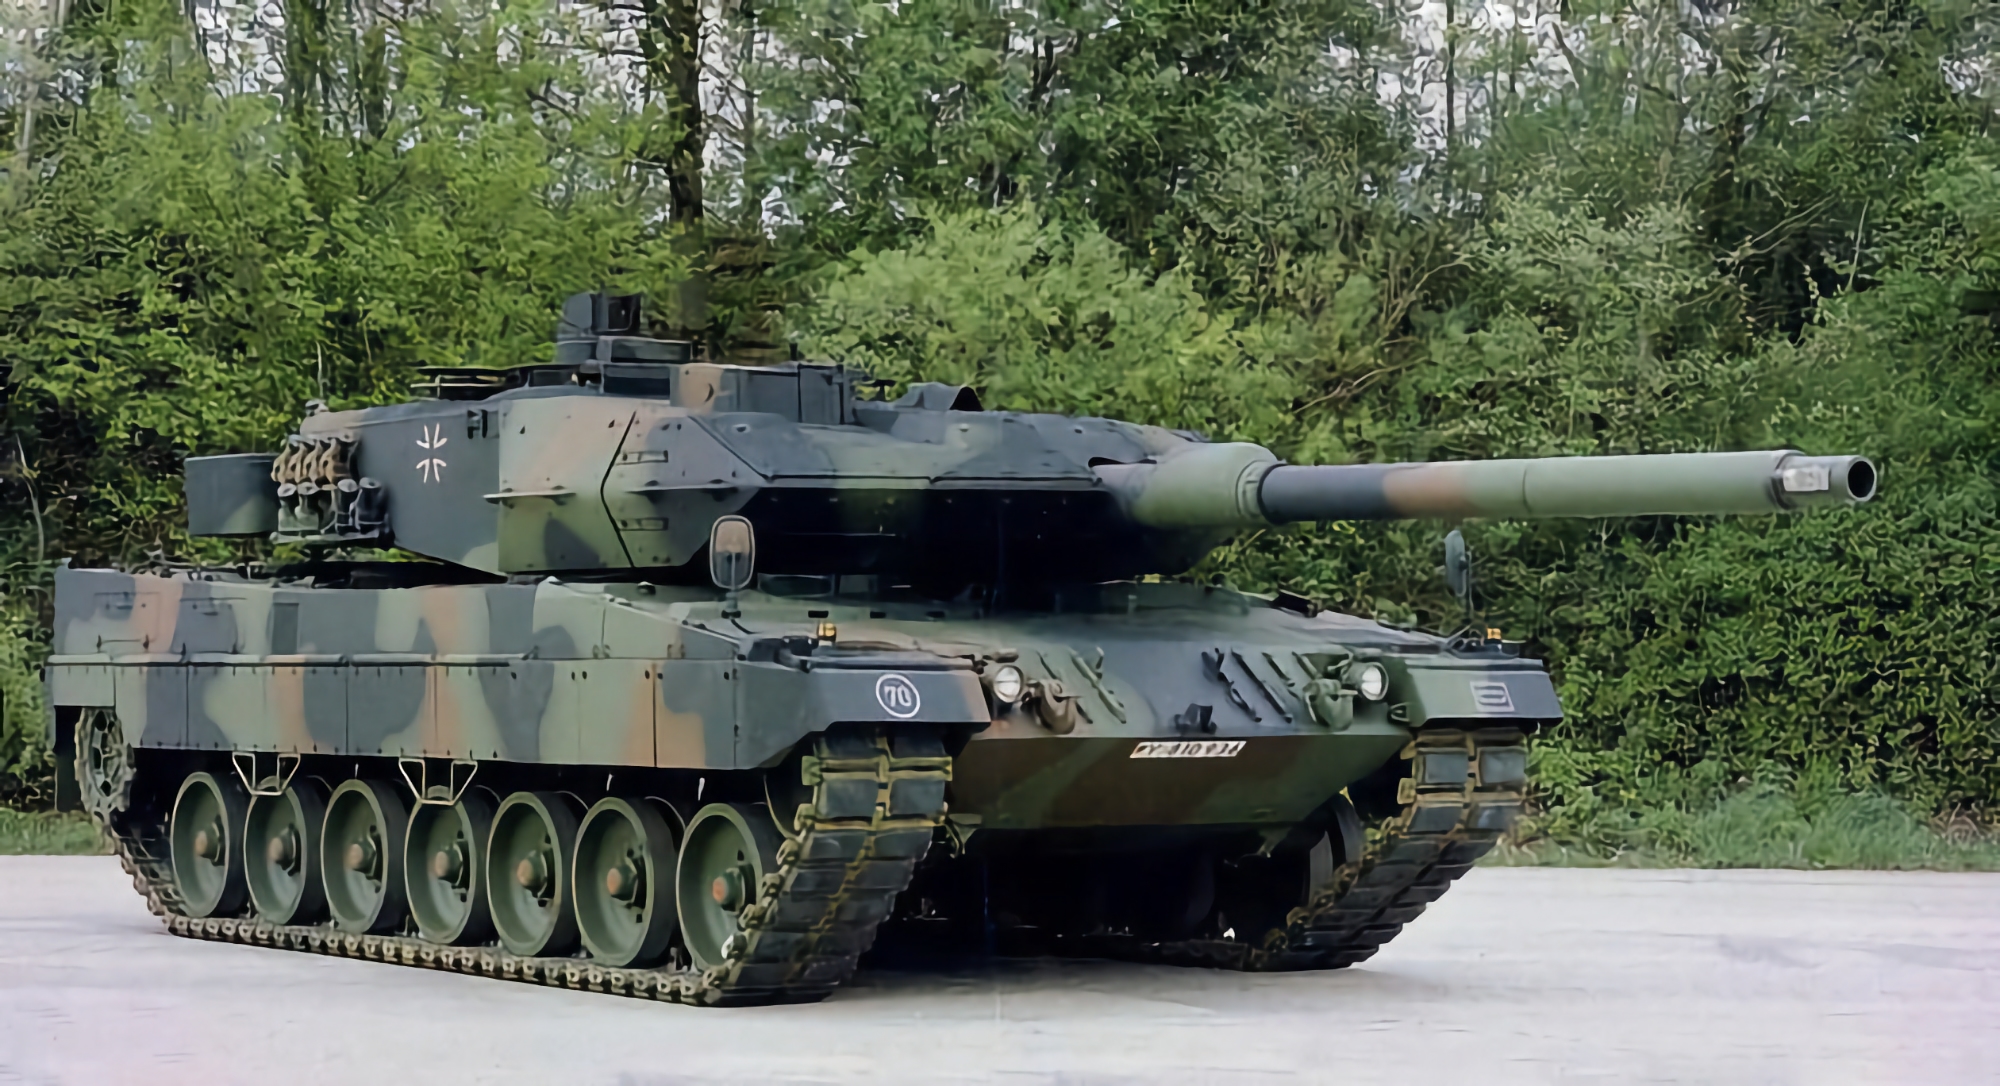 La Spagna è pronta a trasferire 53 carri armati tedeschi Leopard 2 all'Ucraina